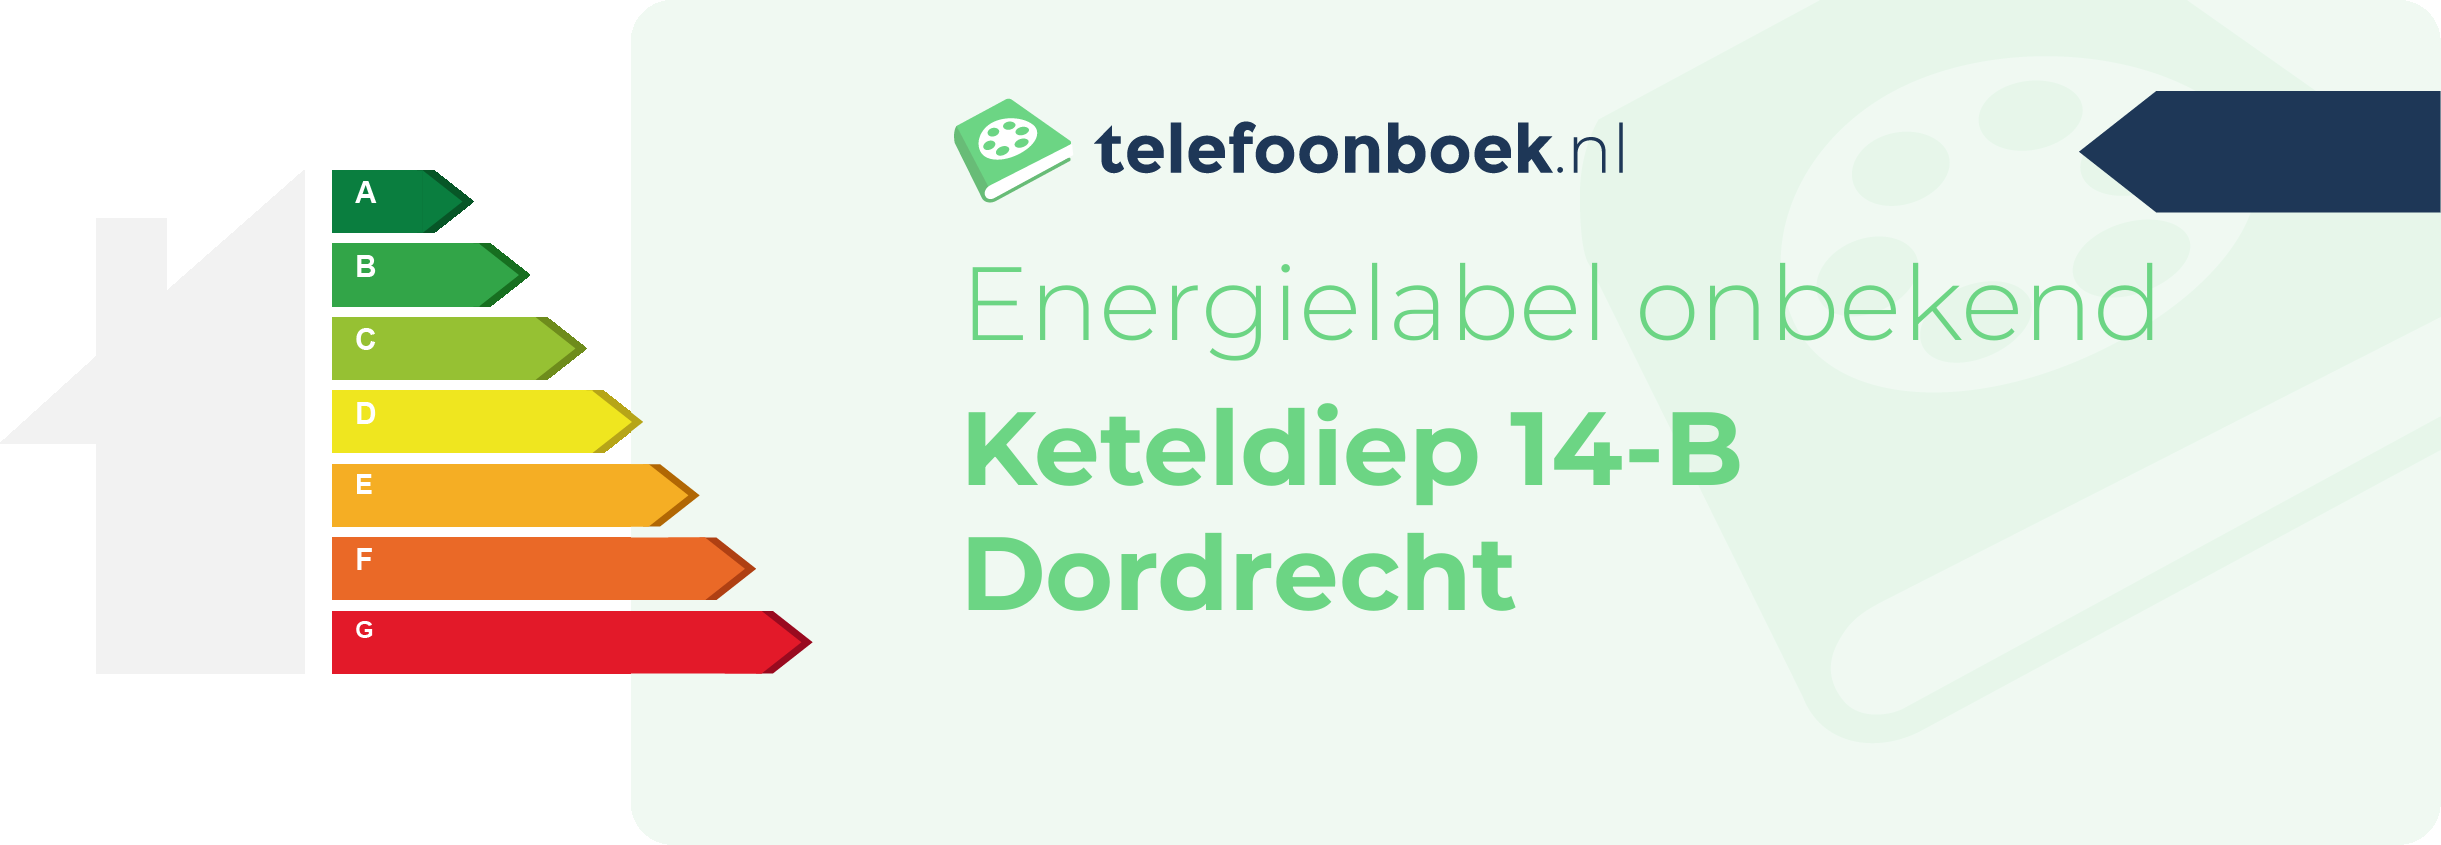 Energielabel Keteldiep 14-B Dordrecht